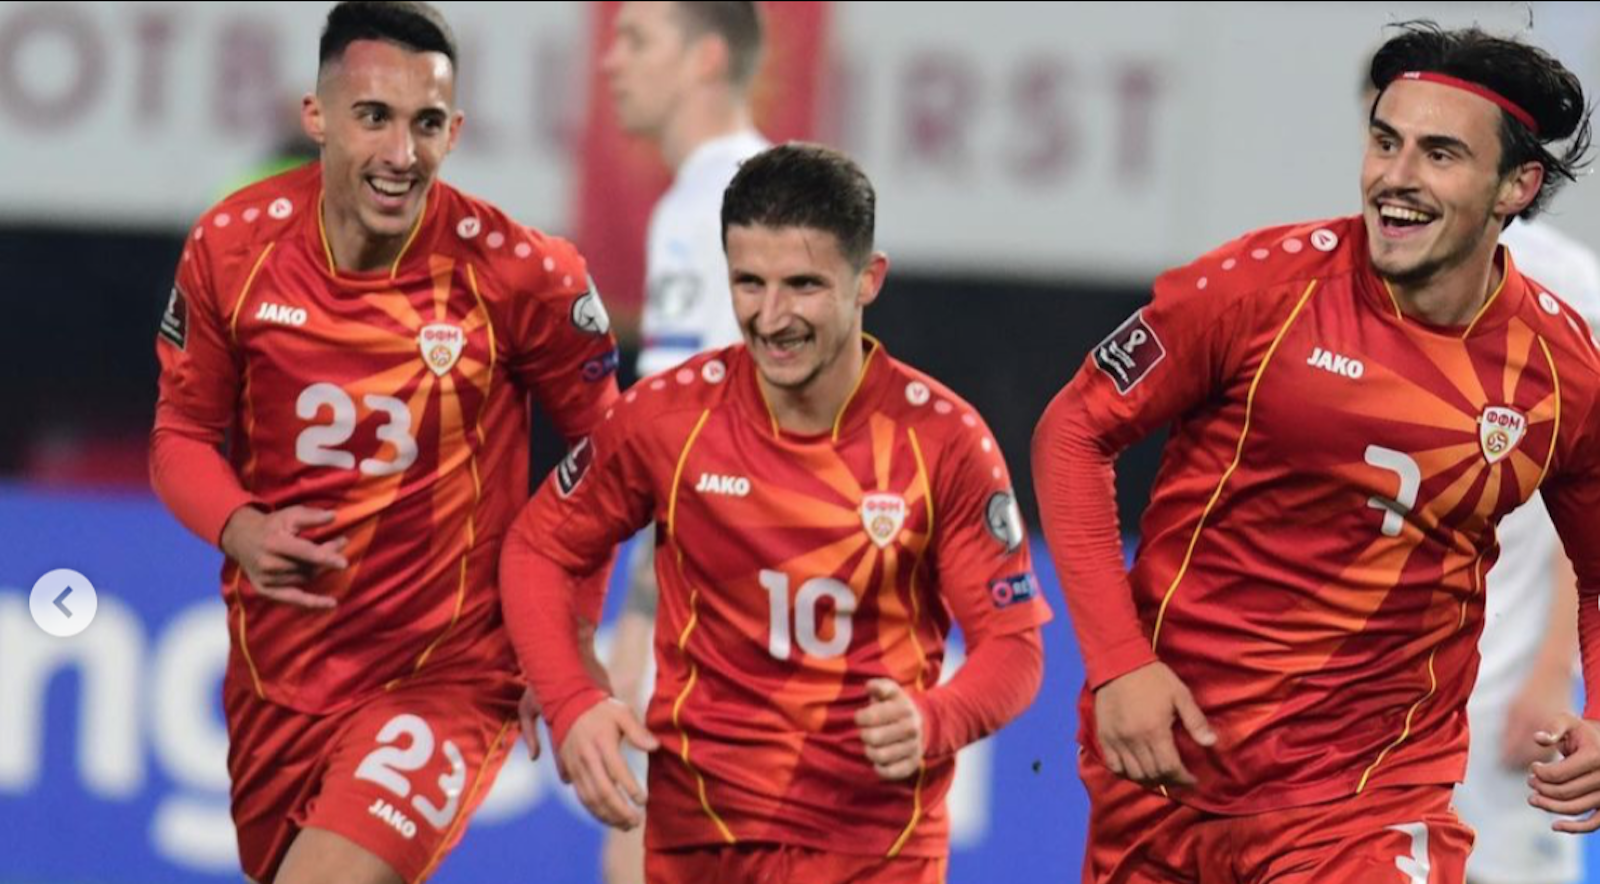 Újabb akadémistánk debütált a felnőtt válogatottban, Miovski gólpassza után vb-ért játszanak az észak-macedónok - körkép